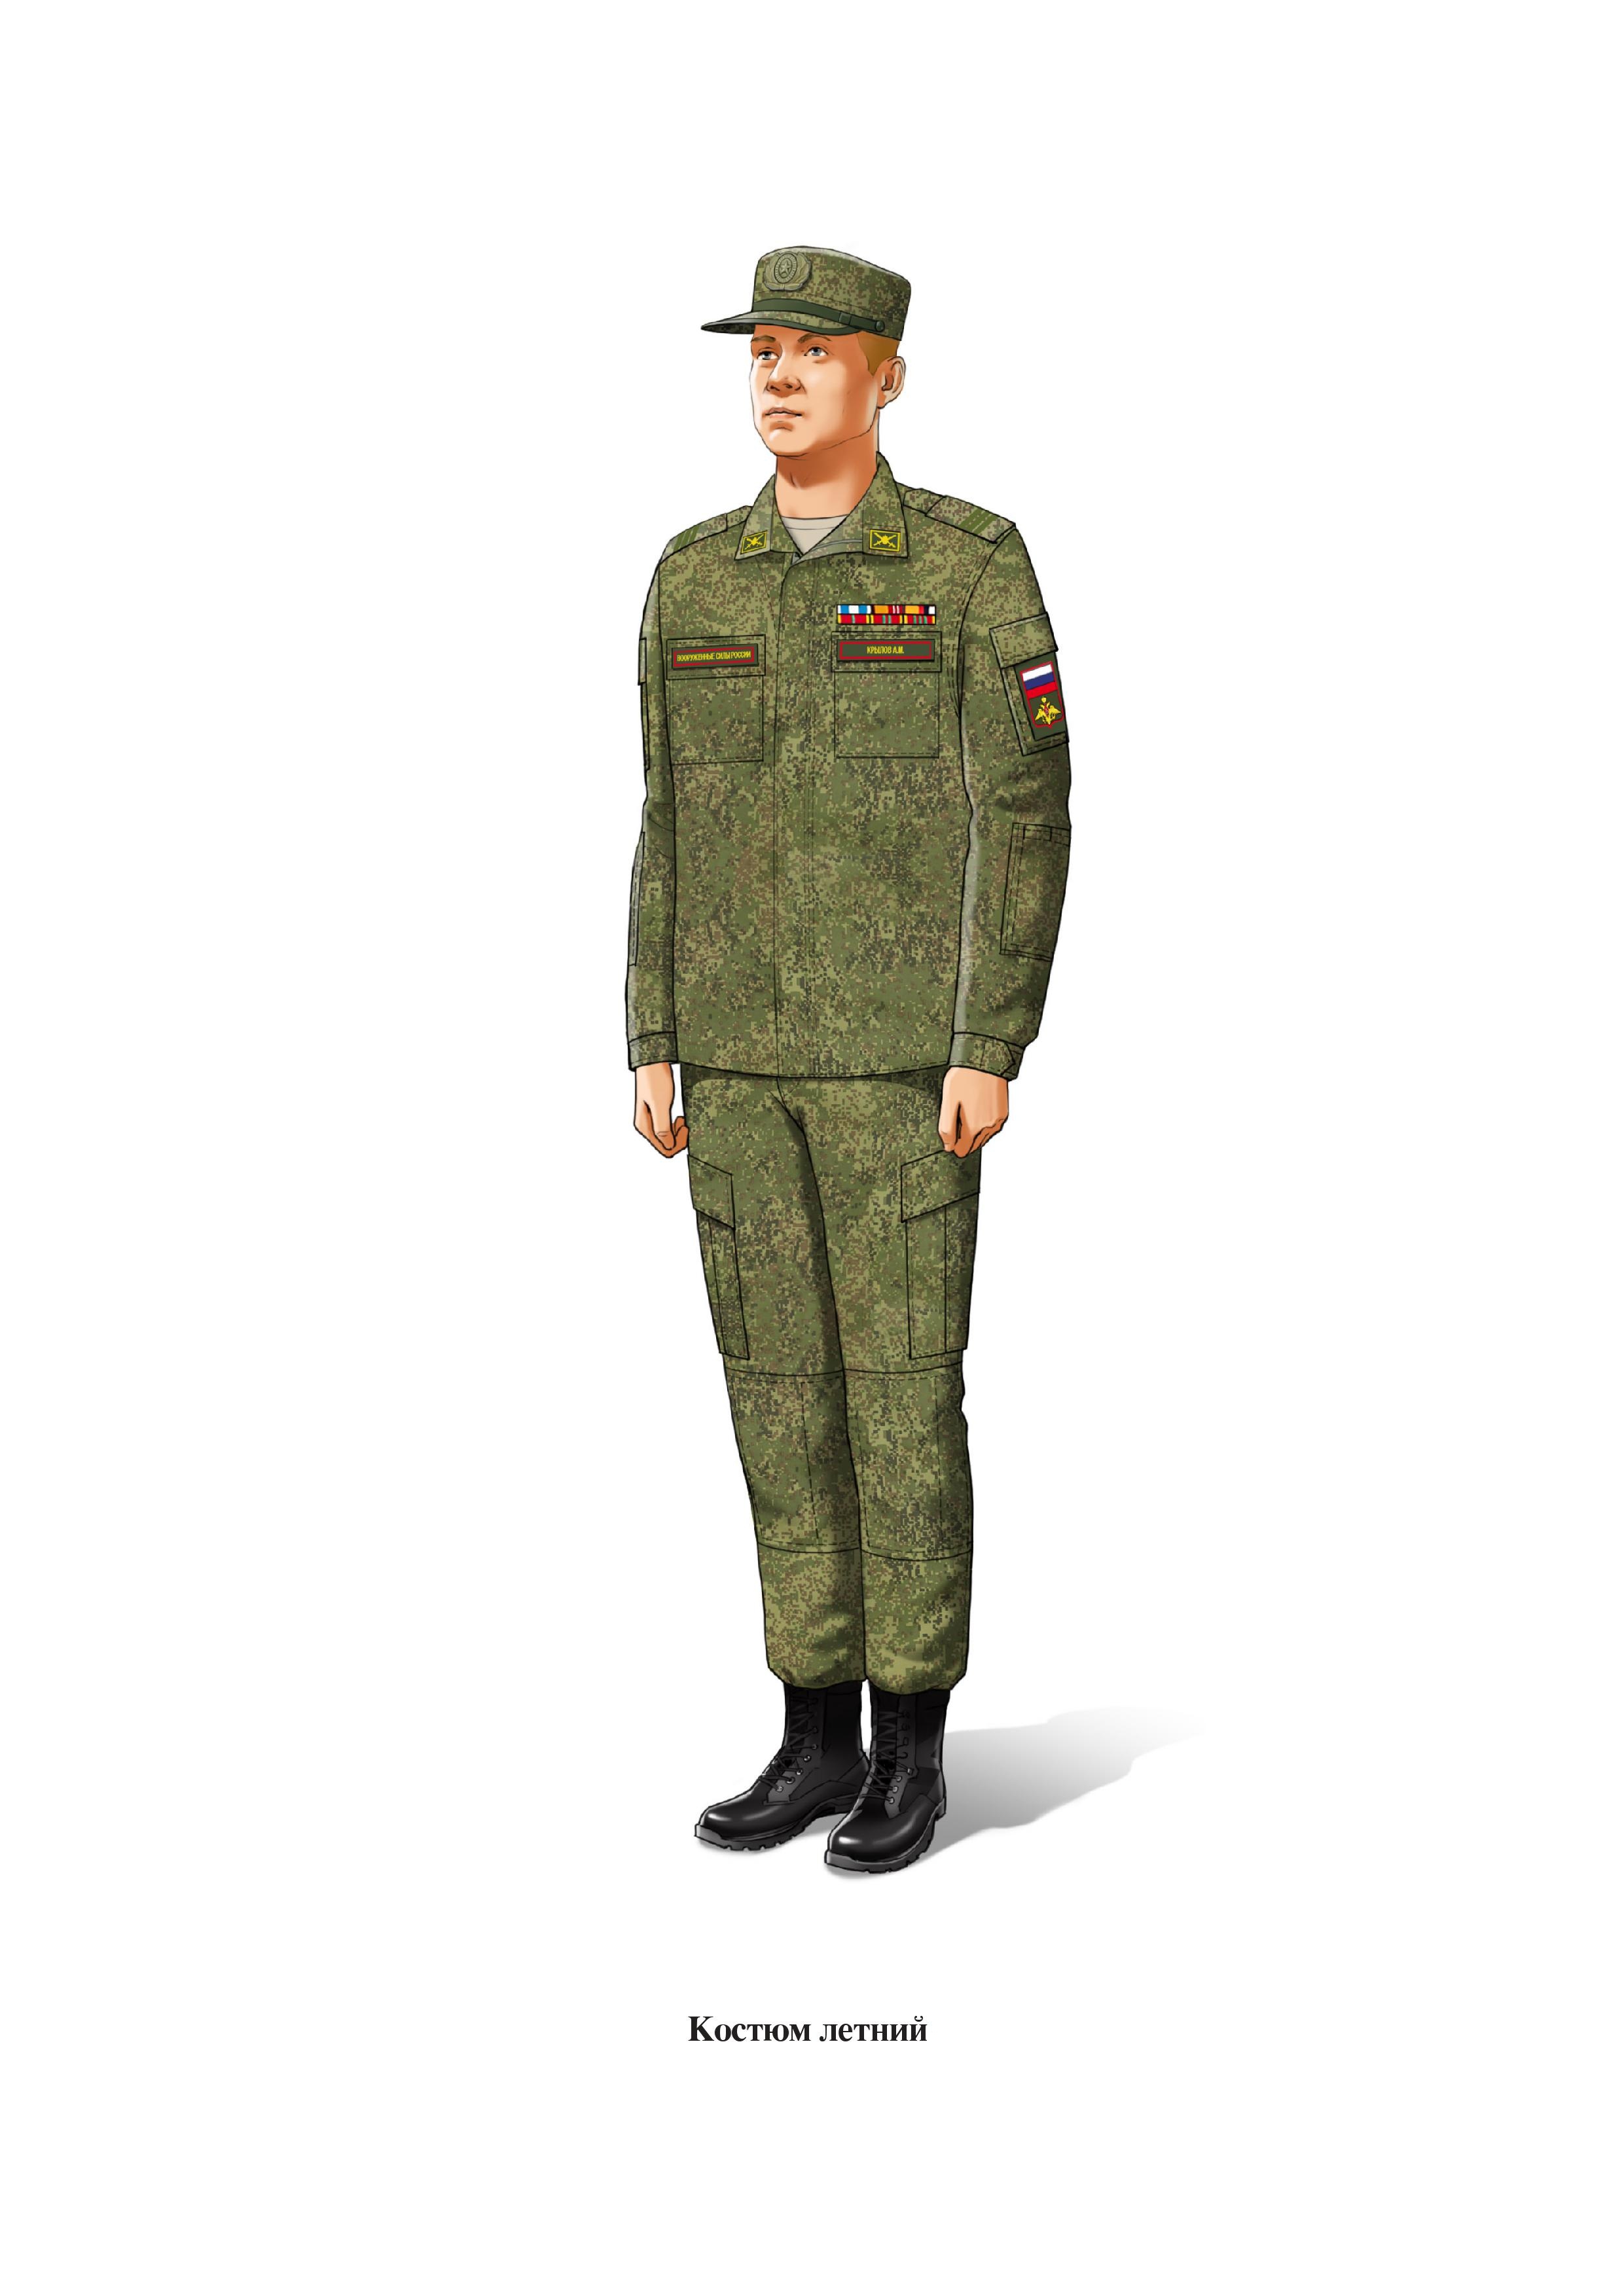 Форма одежды ВКПО военнослужащих Российской армии